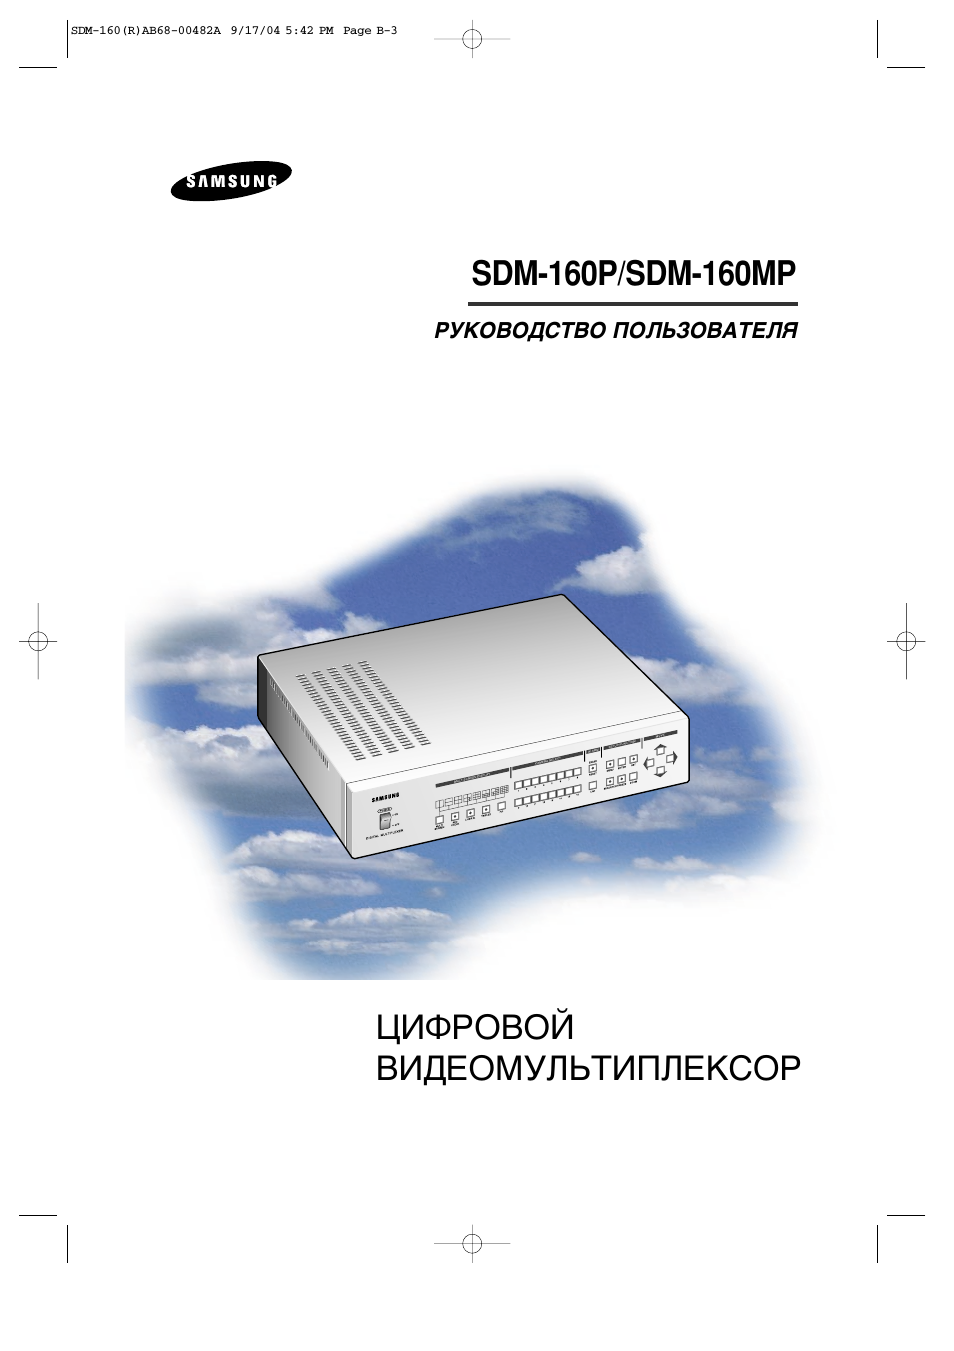 Инструкция по эксплуатации Samsung SDM-160P | 41 cтраница